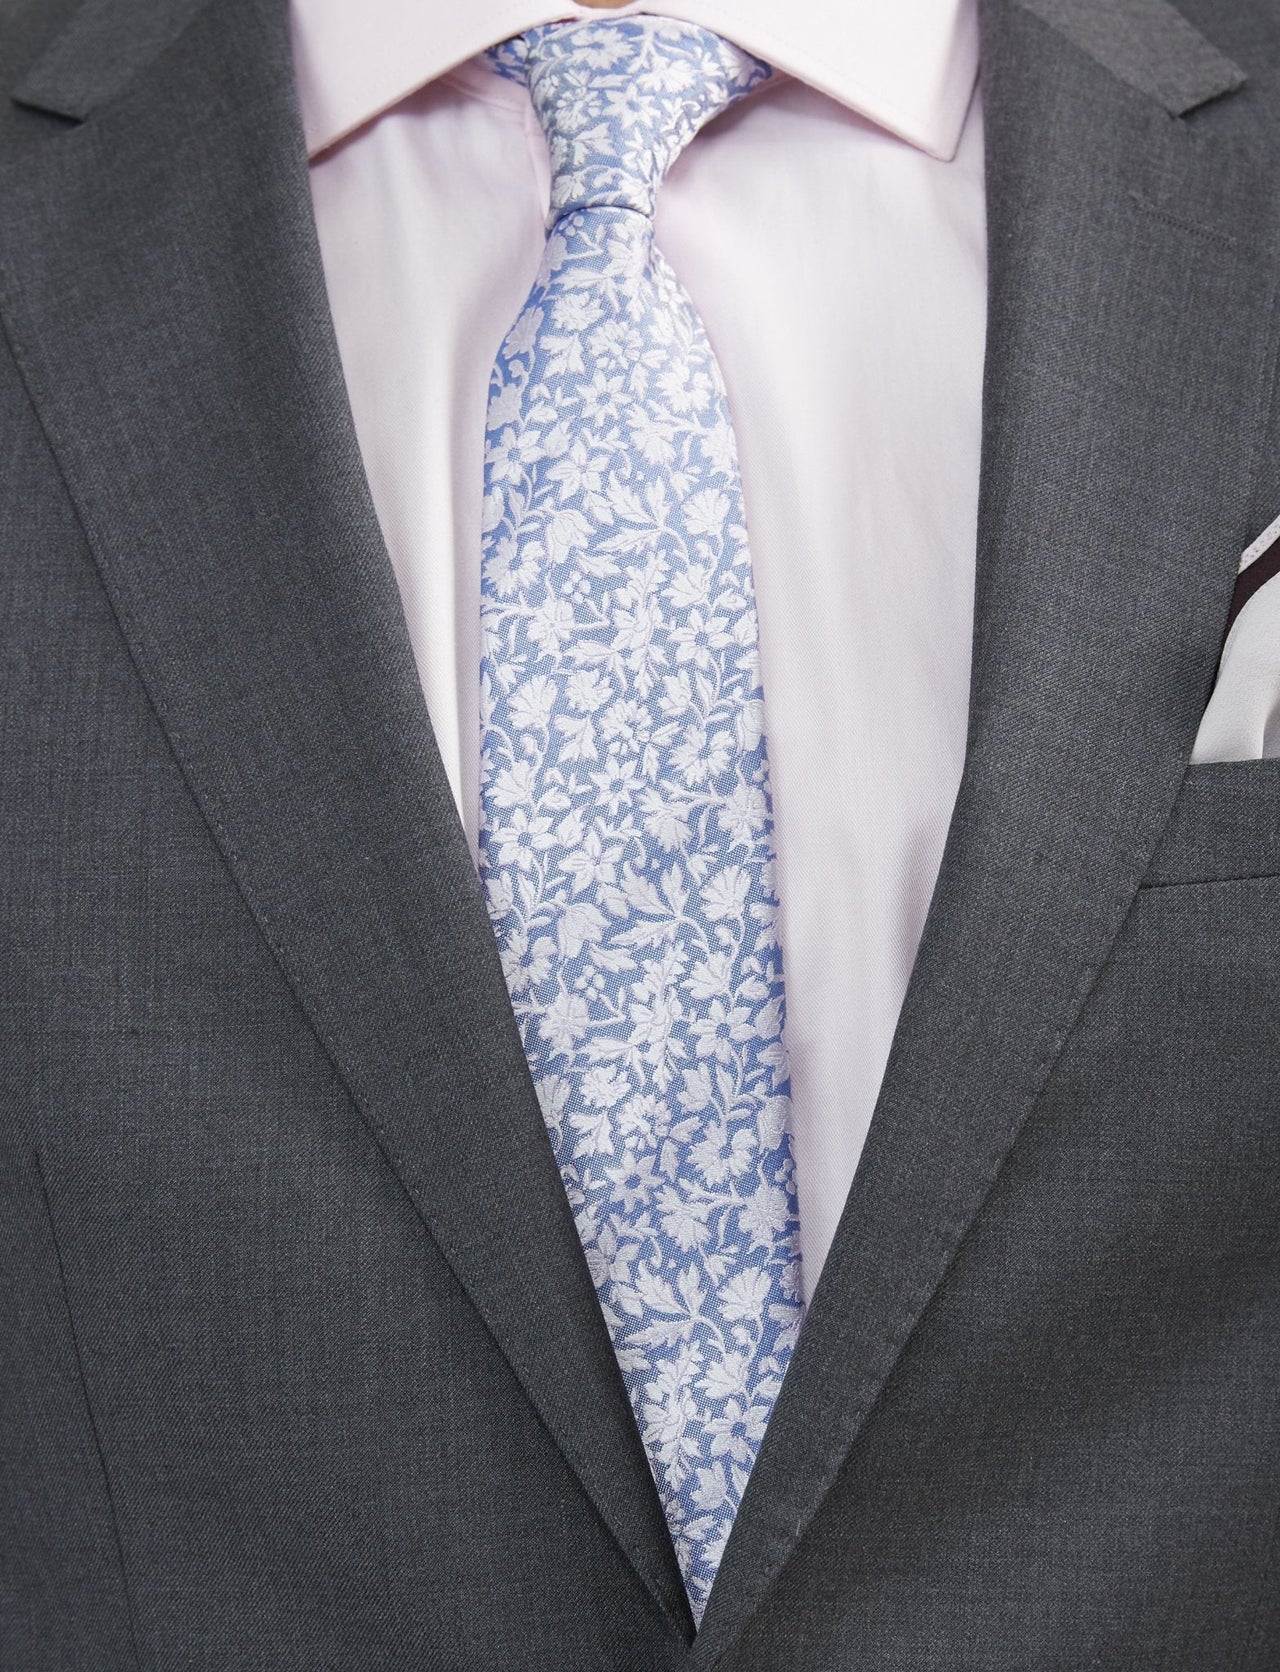 Luxurious Medium Grey Suit For Men - Tomasso Black